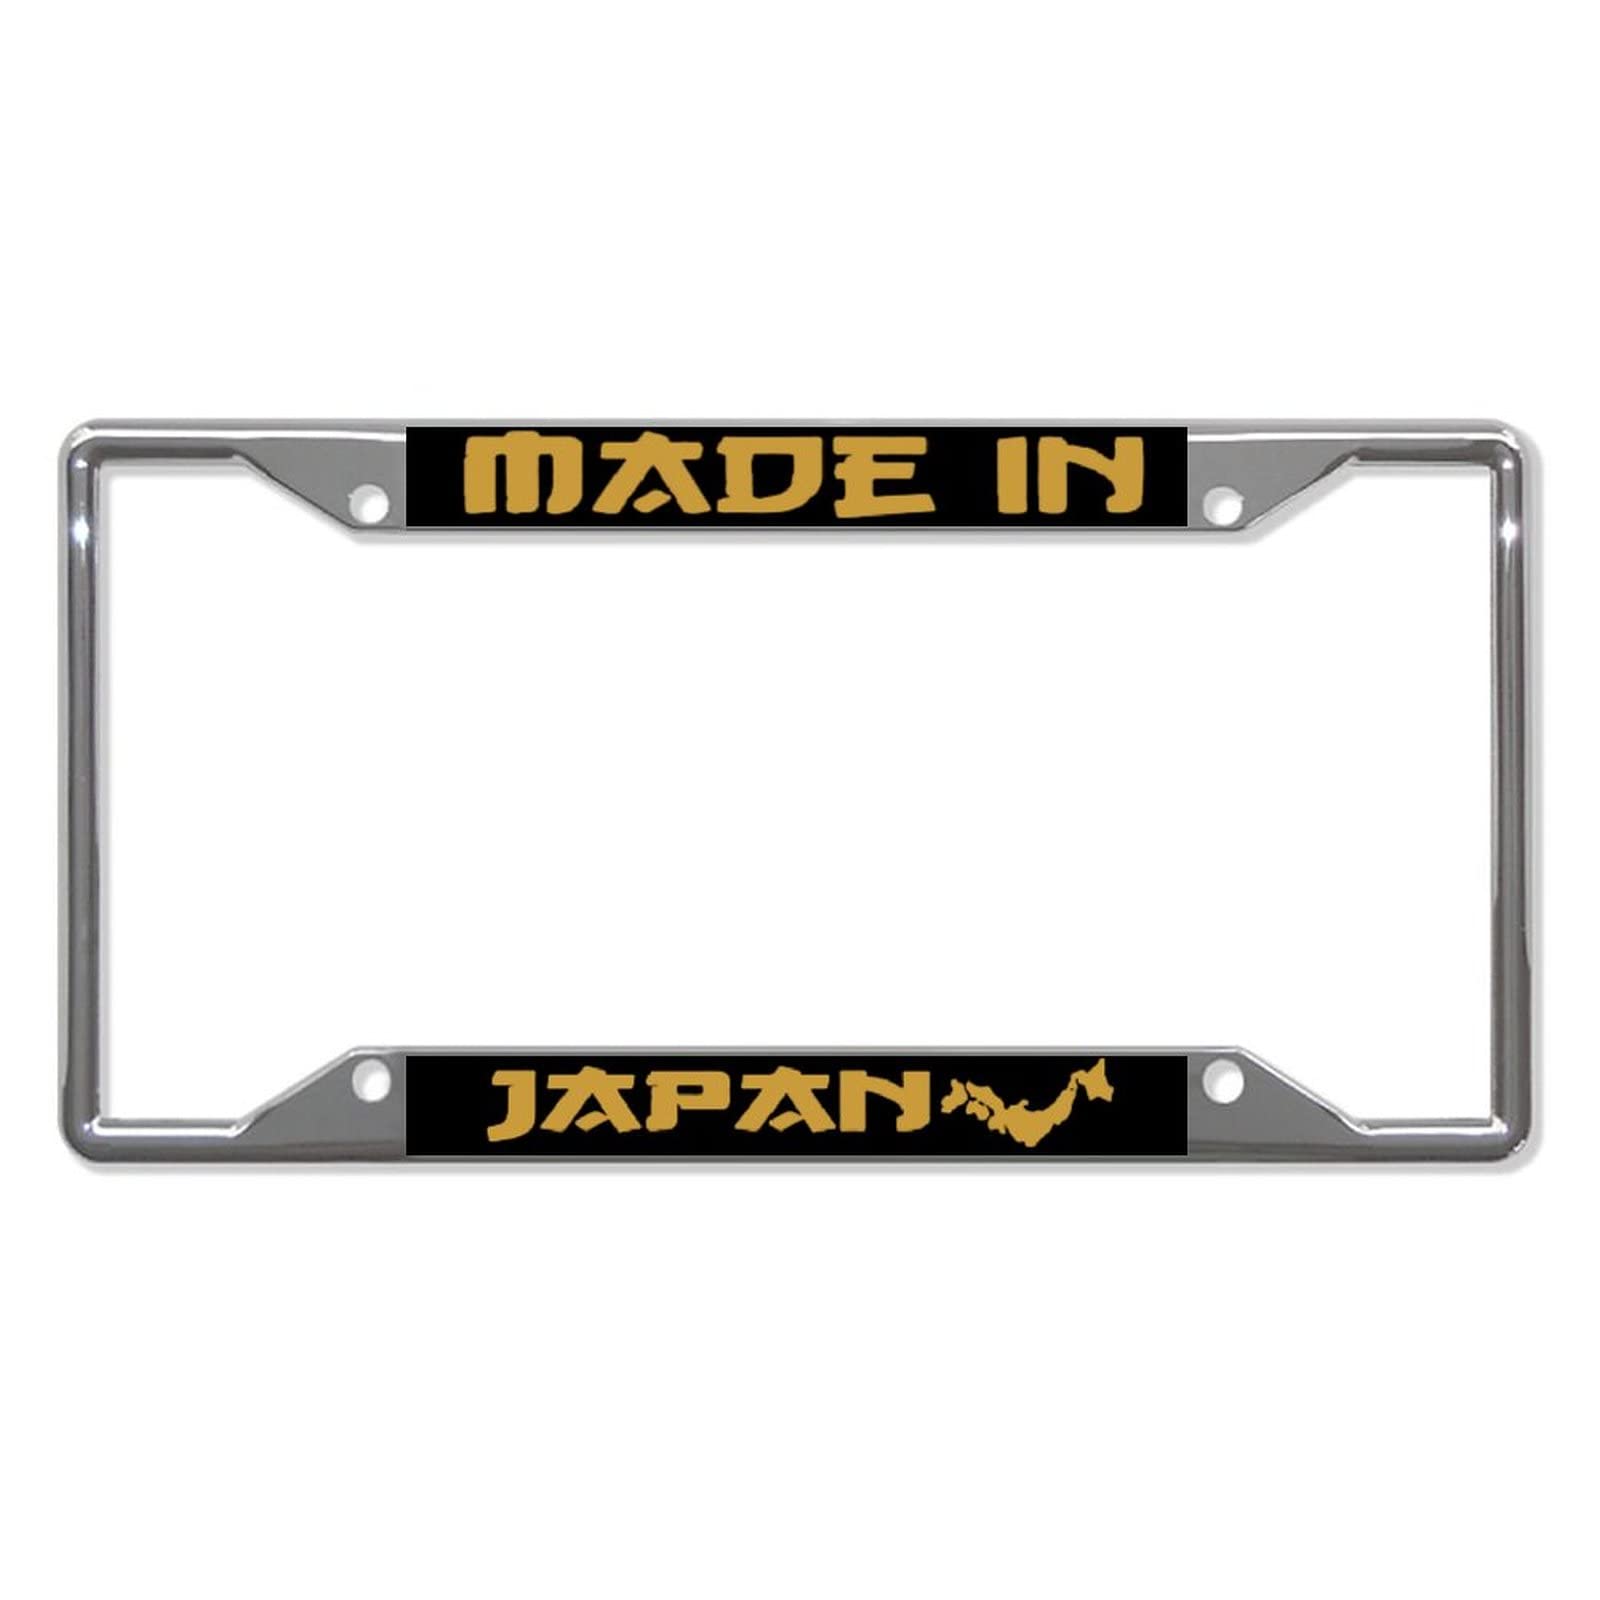 Made in Japan Metal Kennzeichenrahmen Auto Auto Tag Holder - 4 Löcher Kennzeichenabdeckungen Halter Rahmen von Funlucy